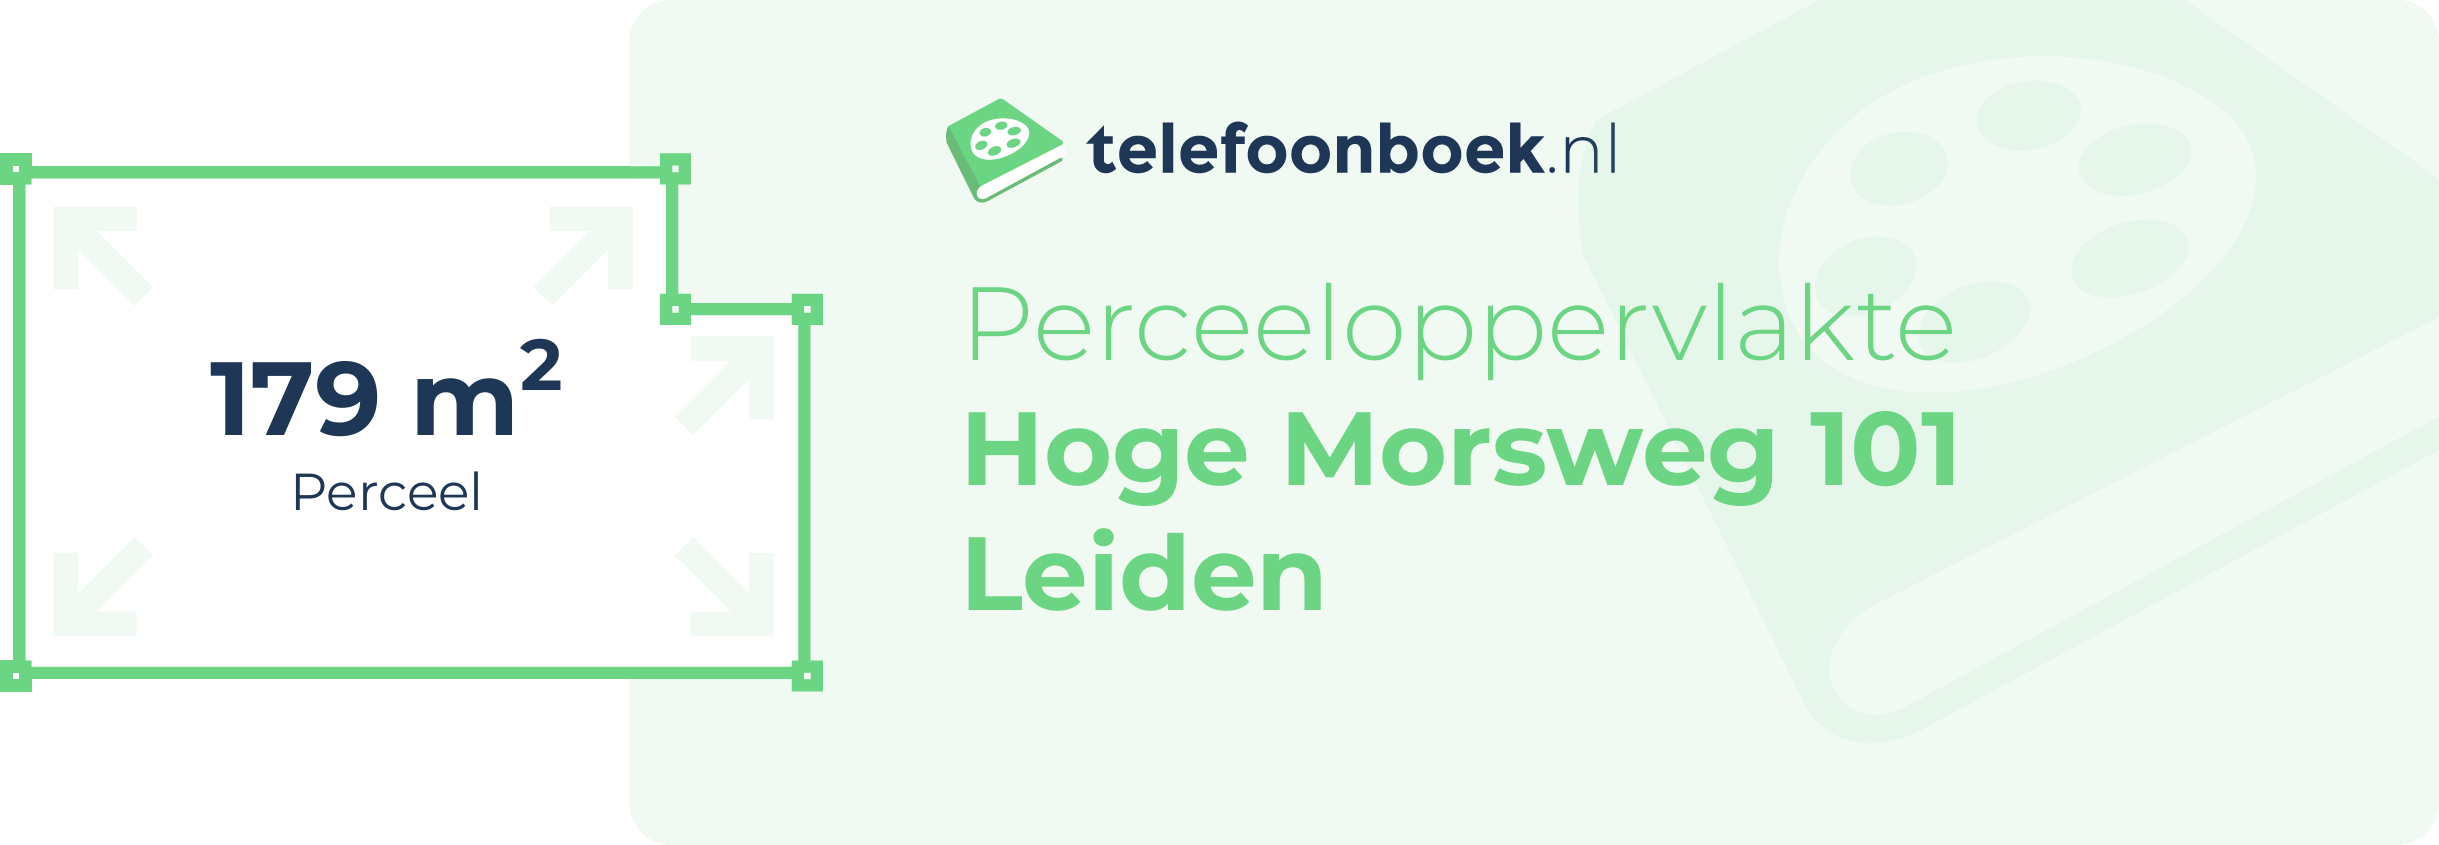 Perceeloppervlakte Hoge Morsweg 101 Leiden